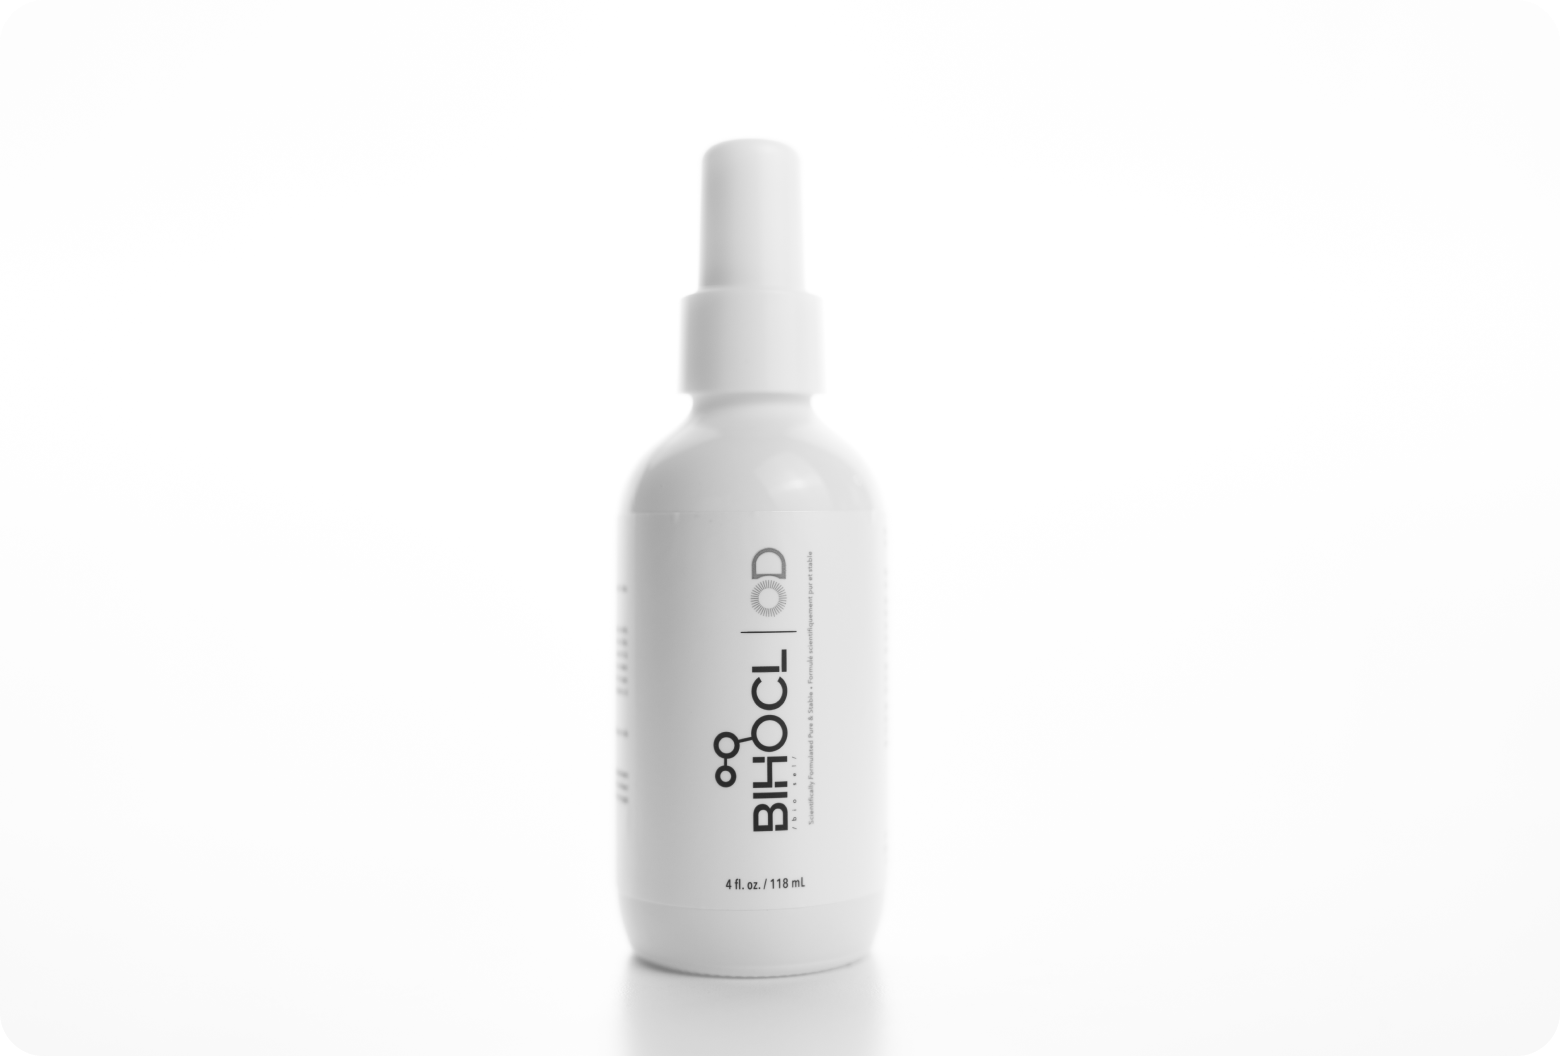 BIHOCL O.D. pure hypochlorous daily eyegiene spray, 118mL